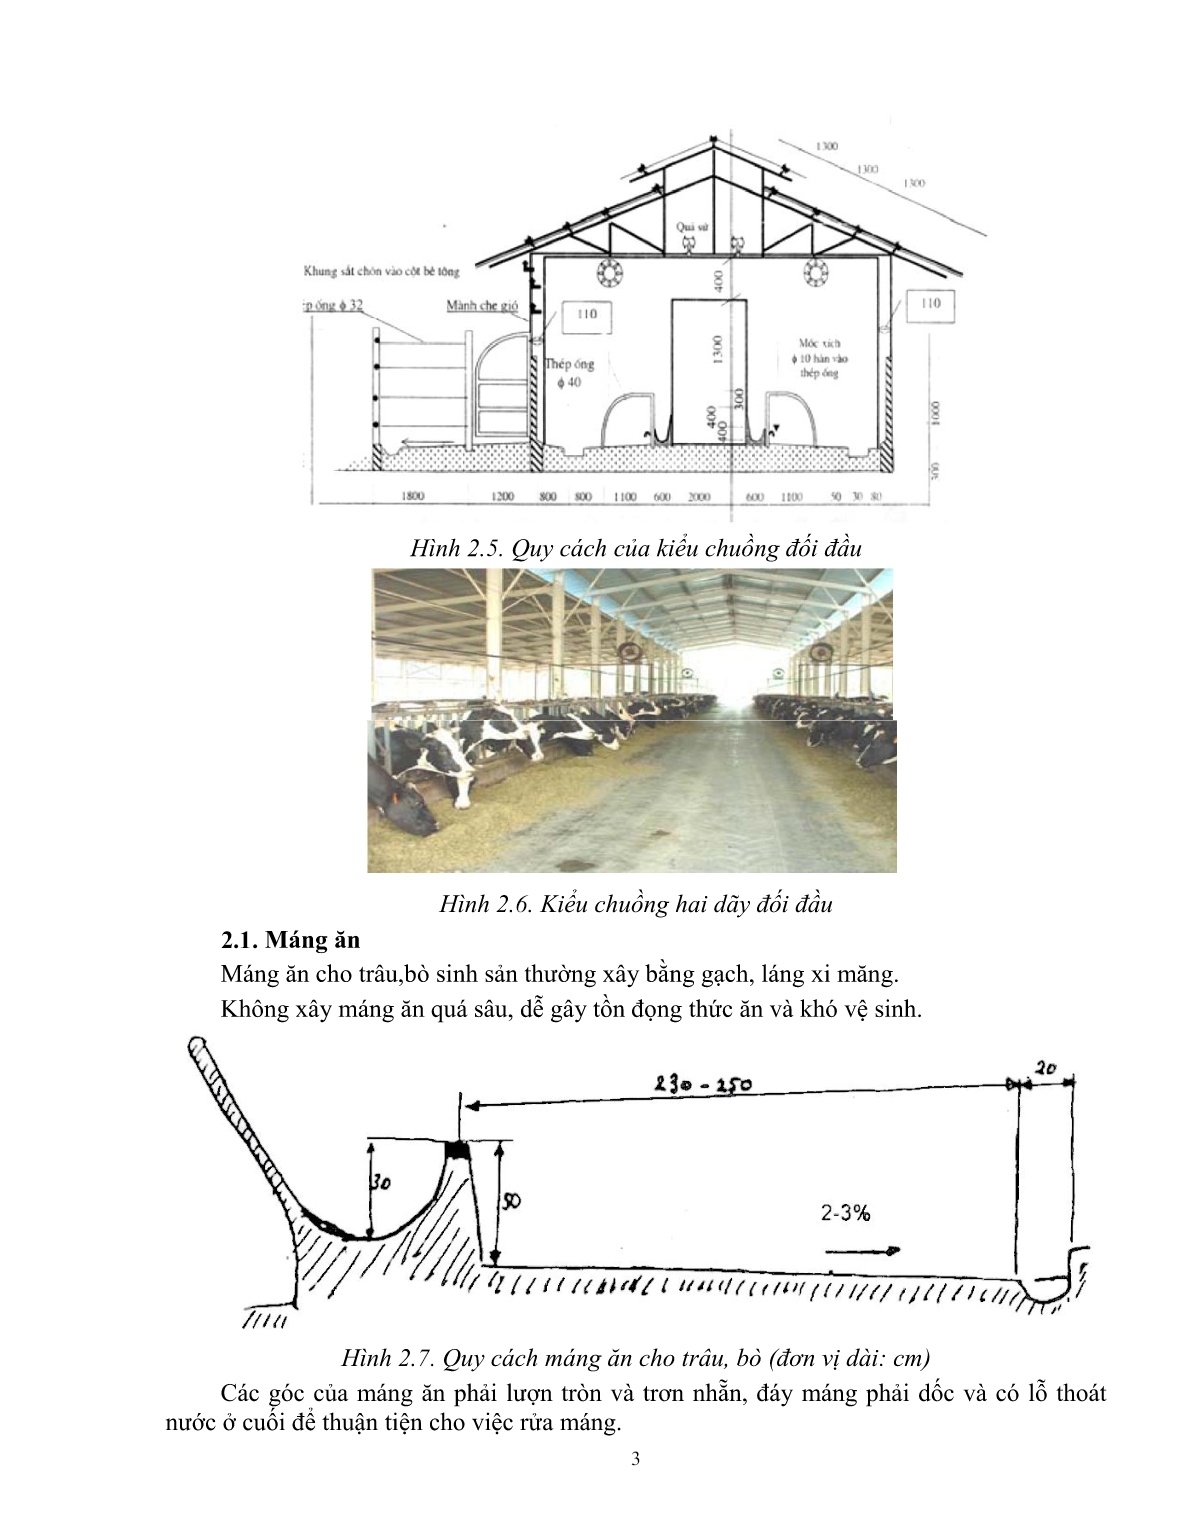 Giáo trình mô đun Nuôi trâu, bò cái sinh sản (Trình độ: Đào tạo dưới 3 tháng) trang 5